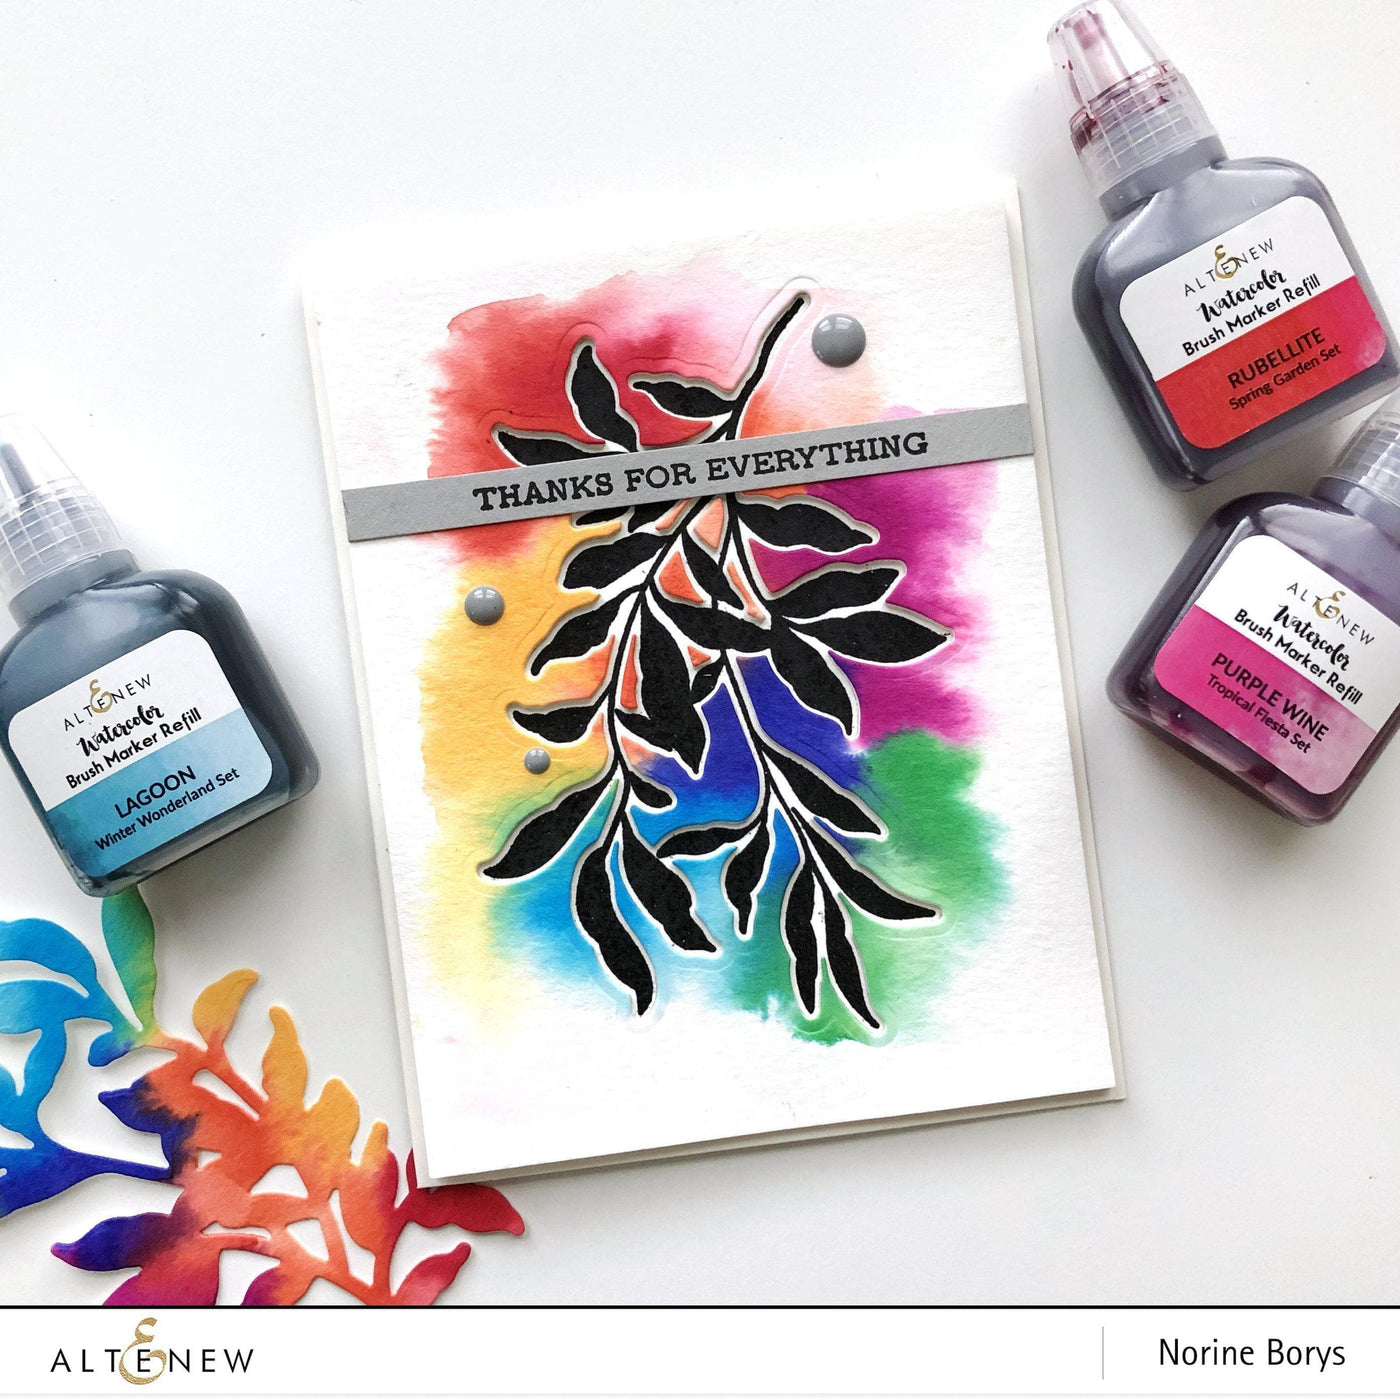 Liquid Watercolor Bundle Tropical Fiesta Watercolor Brush Markers & Refill Bundle